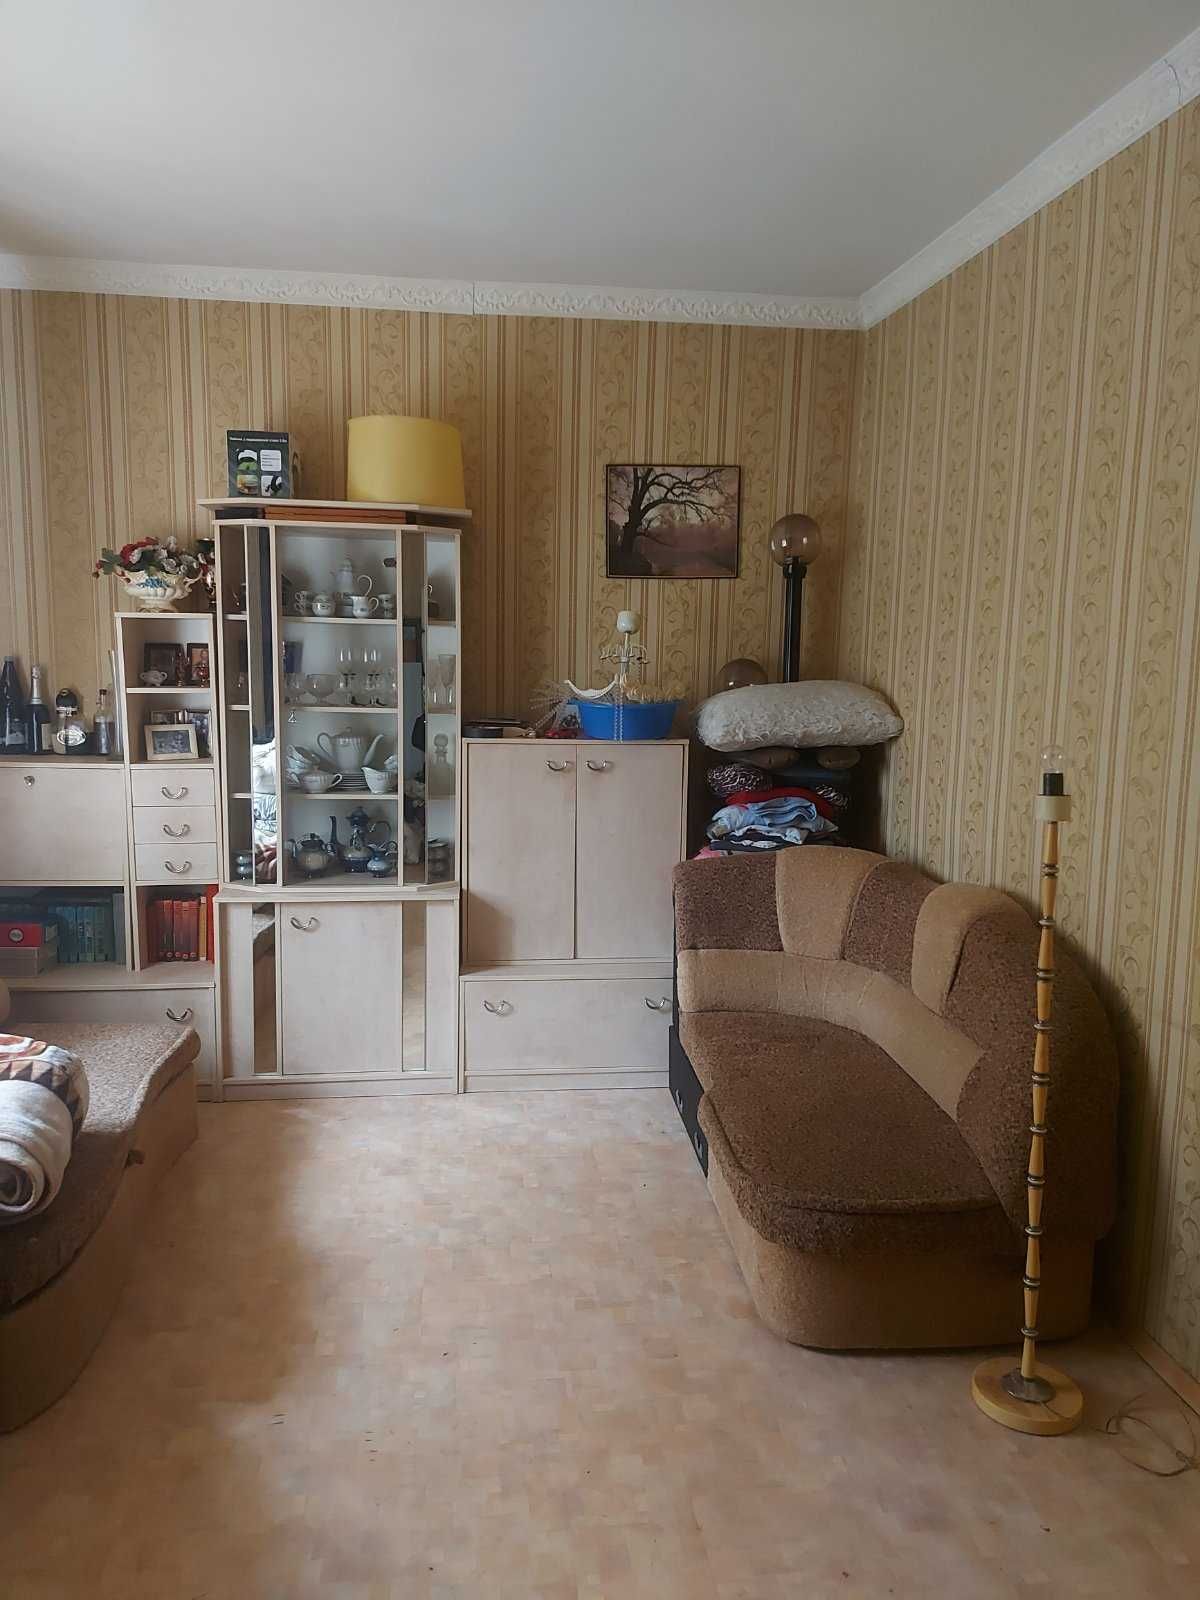 Продам дом в Харькове на Алексеевке без комиссионных .Сертификат.